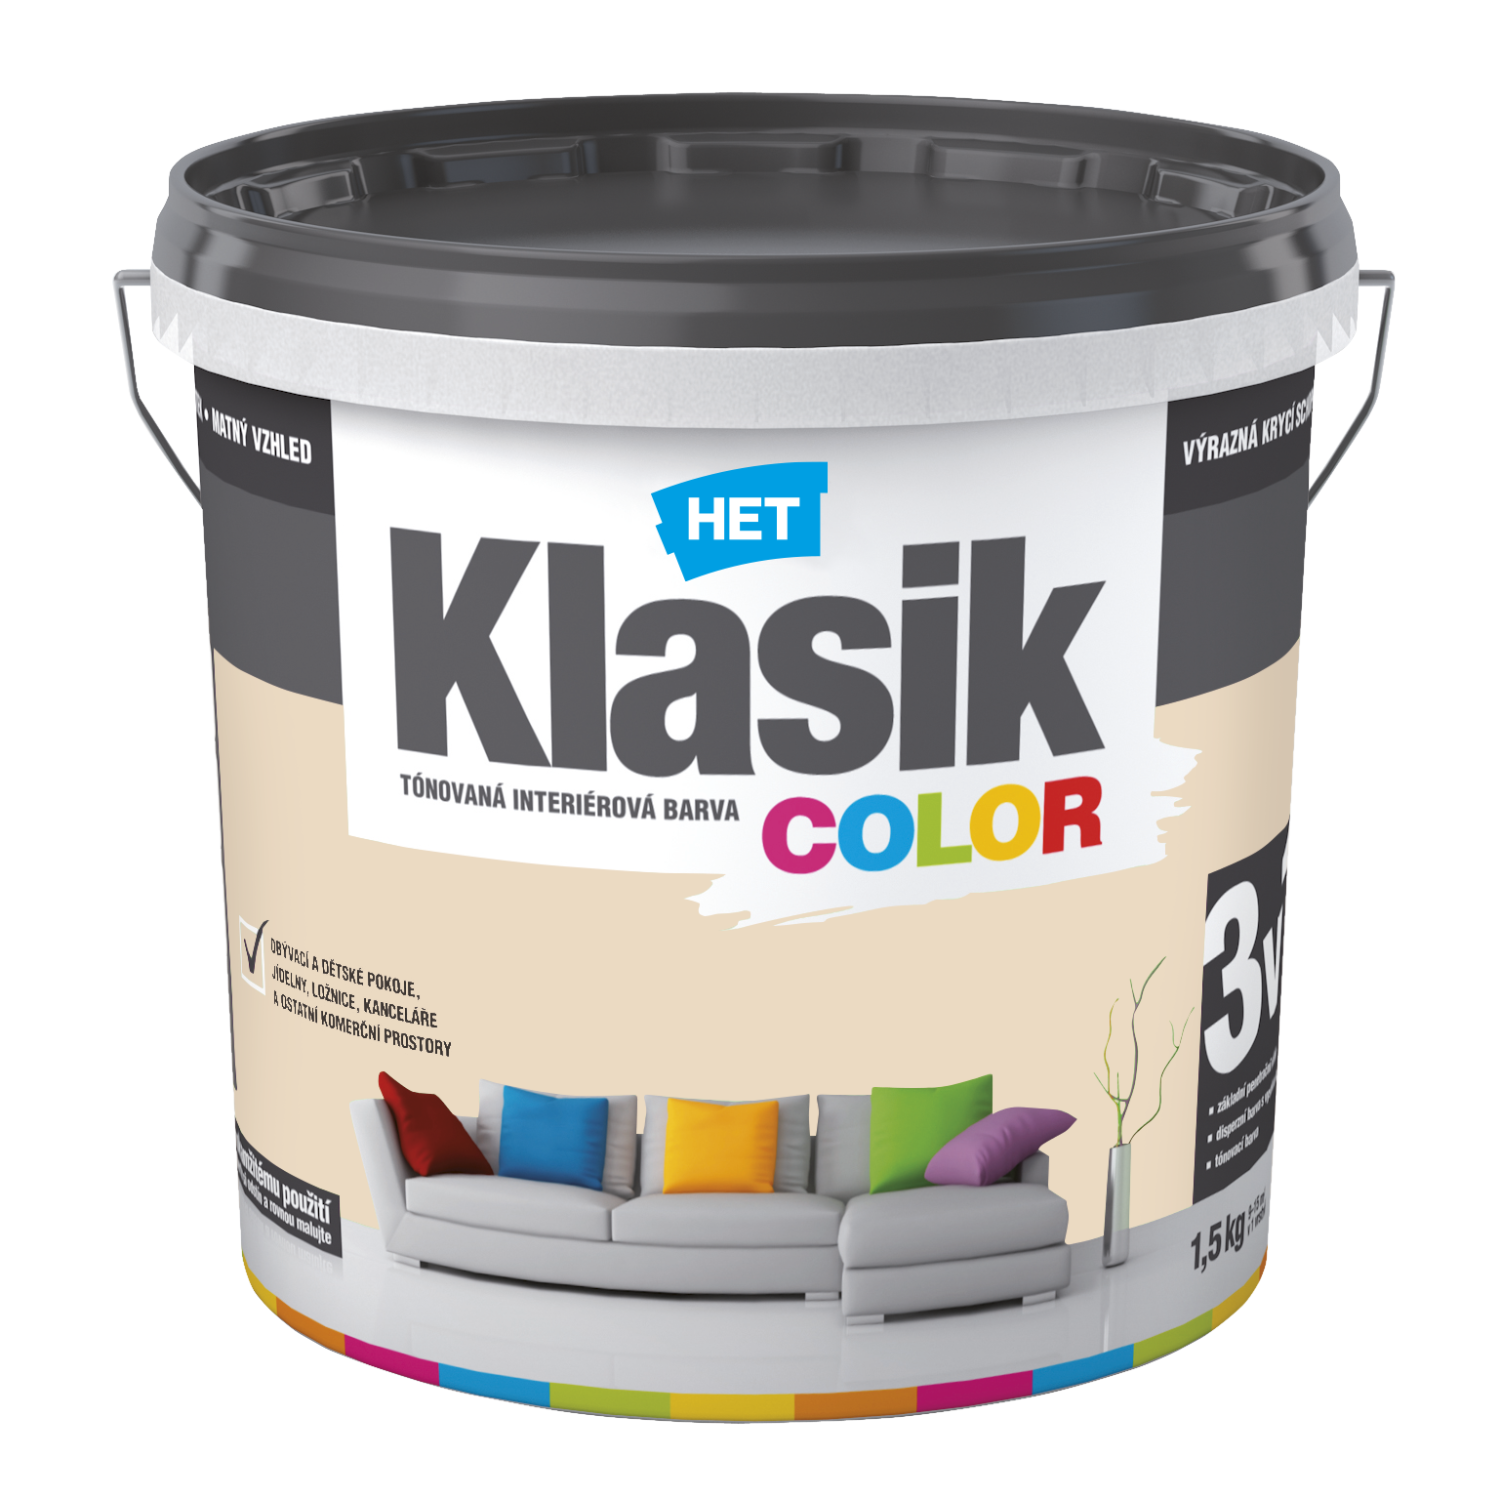 HET Klasik COLOR tónovaná interiérová akrylátová disperzná oteruvzdorná farba 1,5 kg, KC0167 - šedý betónový